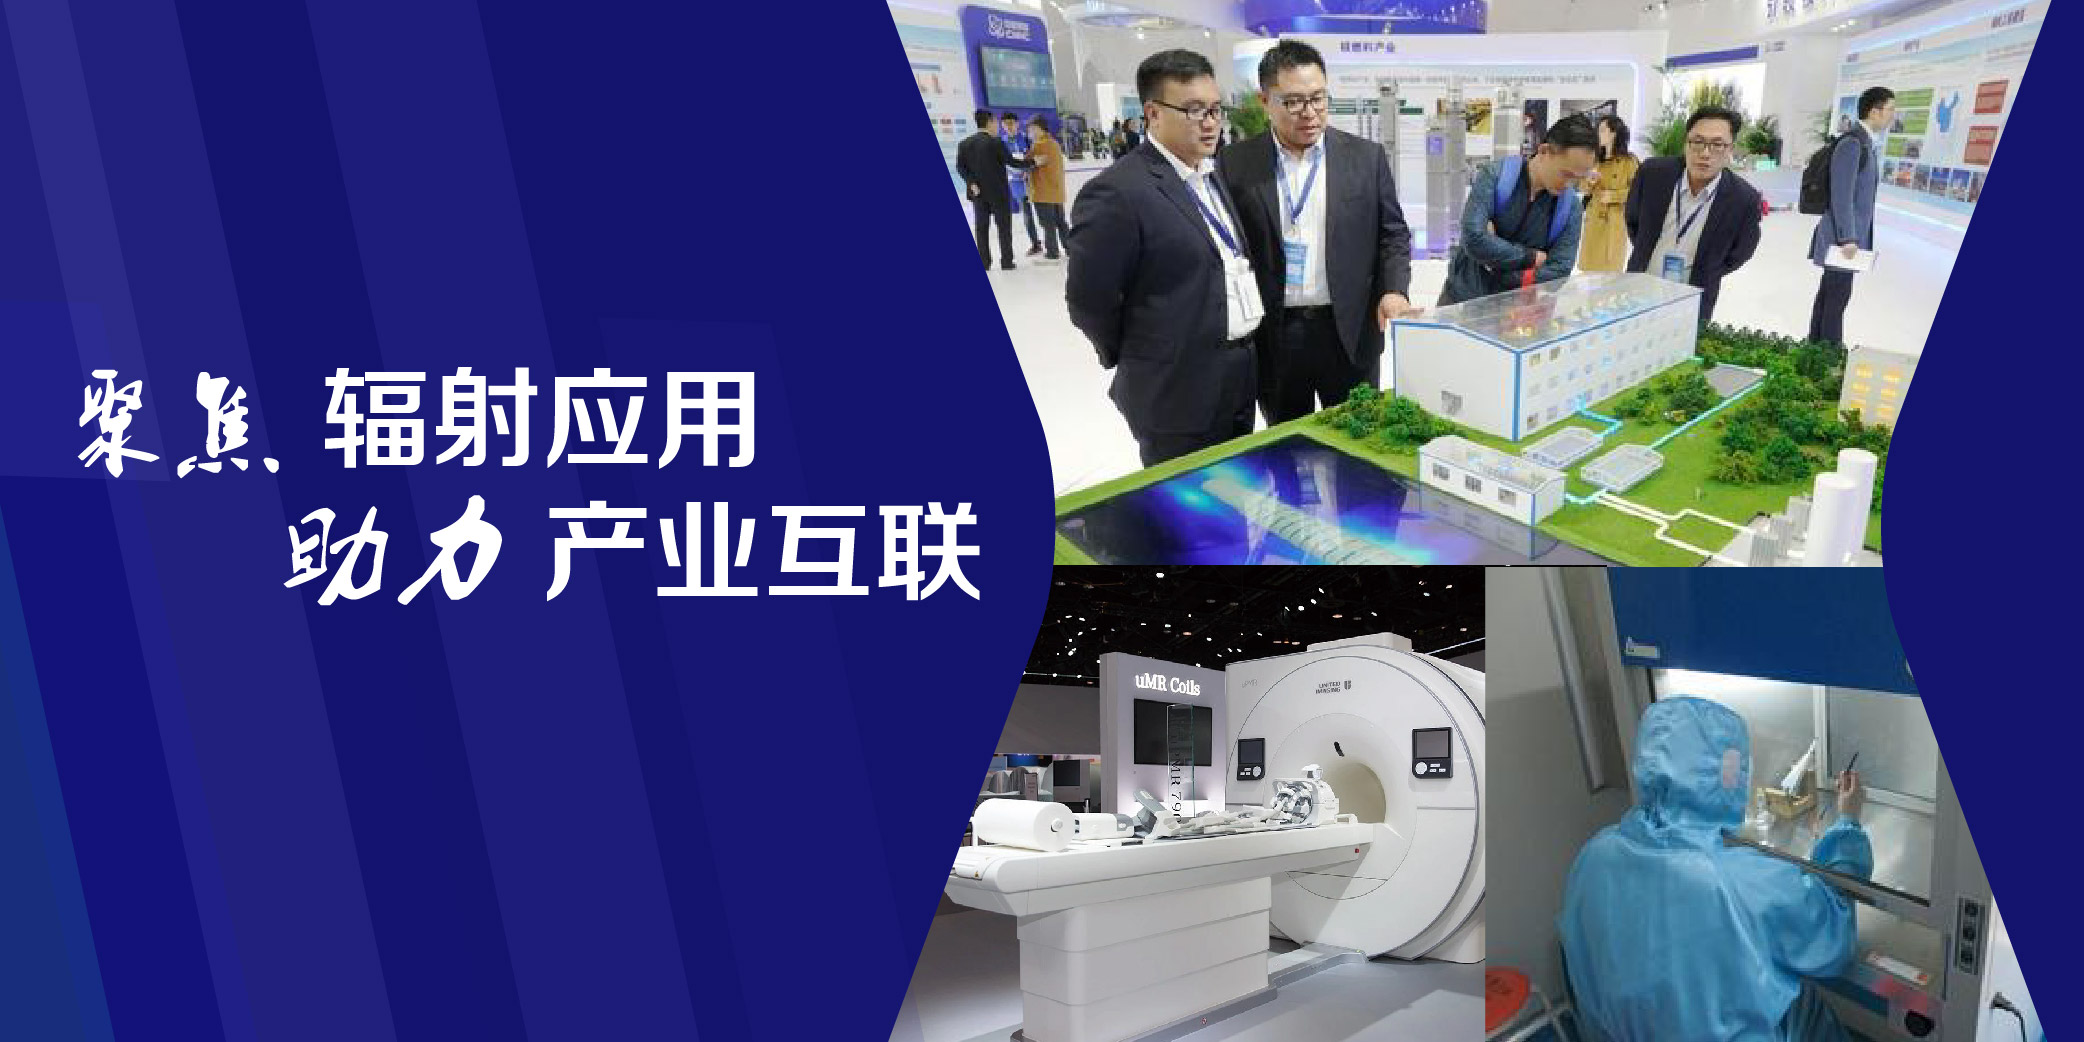 「头条」2019上海电子加速器、辐照加工、核辐射科技展览会